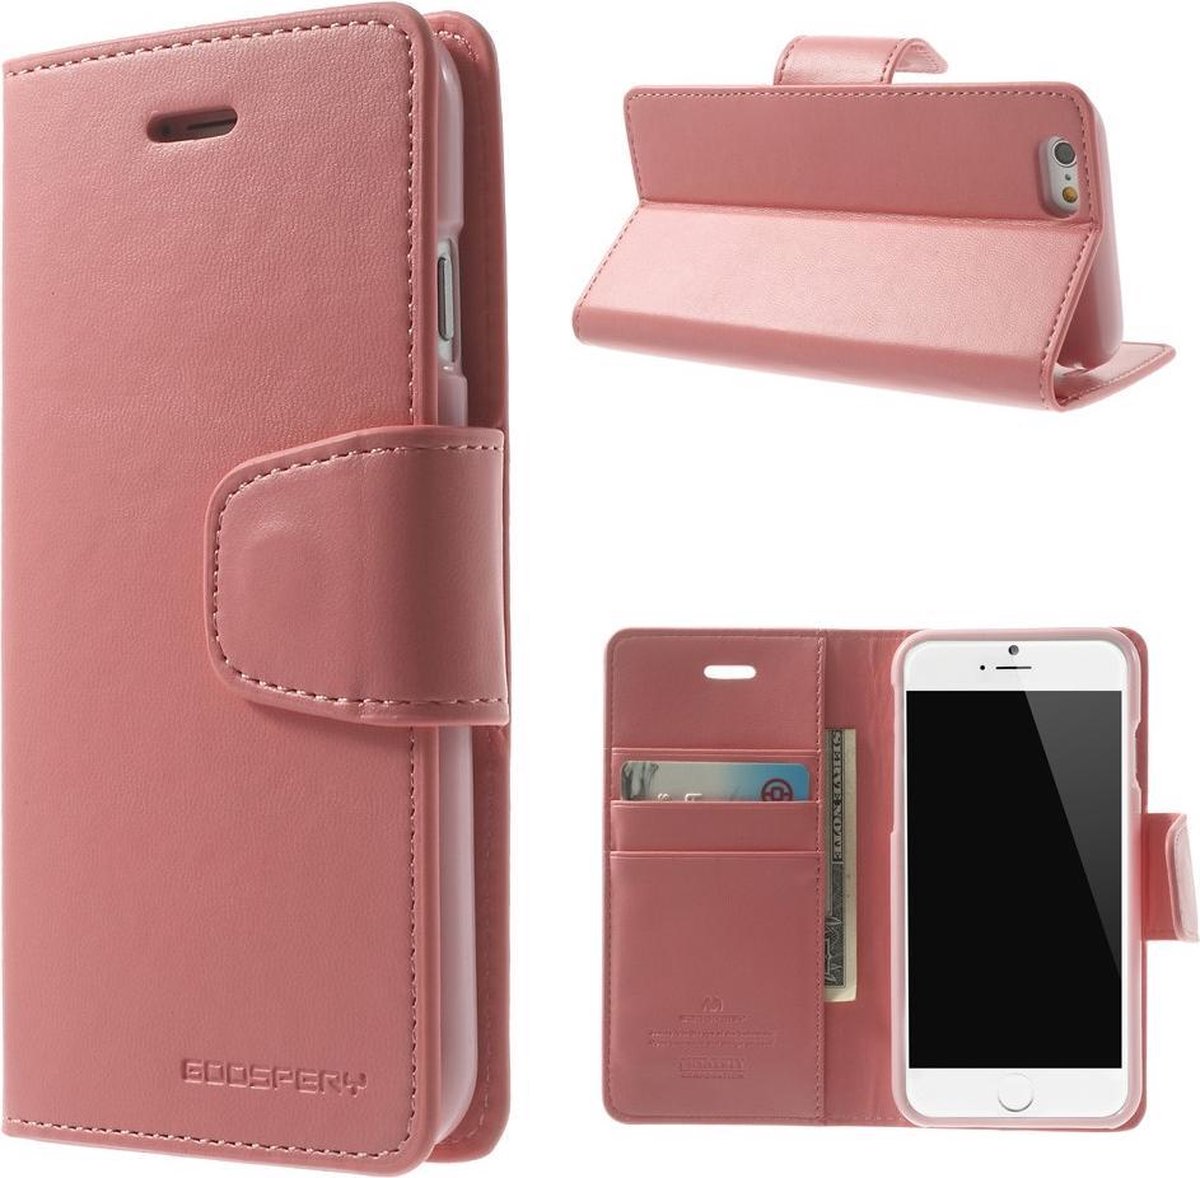 Zacht roze luxe bookcase voor iPhone 6 plus / 6s plus - ROZE - GOOSPERY